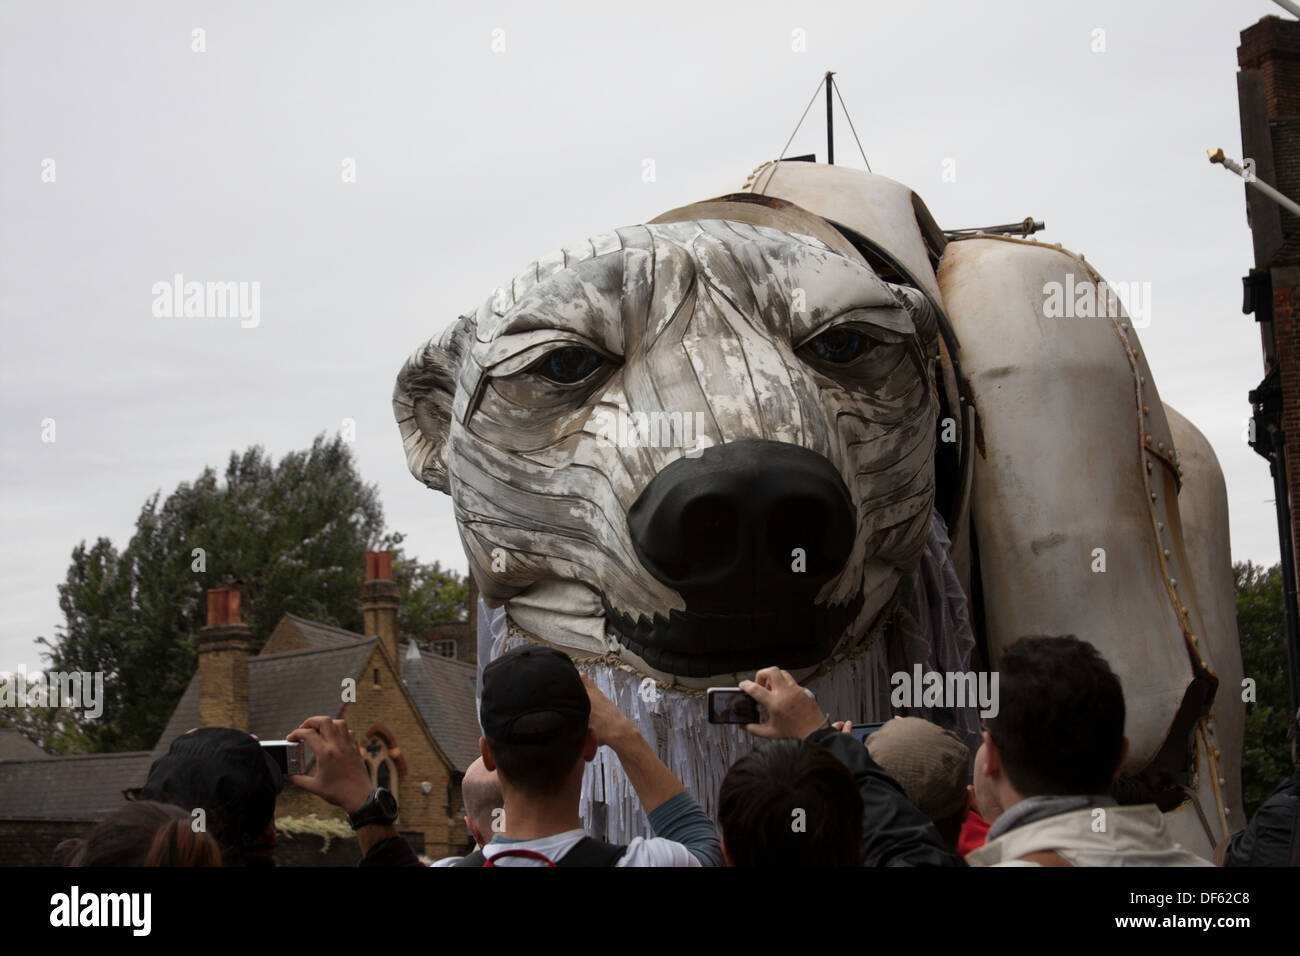 Aurora, un ours polaire géant de la taille d'un bus à impériale a été le point central de la journée d'action du Royaume-Uni à protéger l'Arctique. Banque D'Images